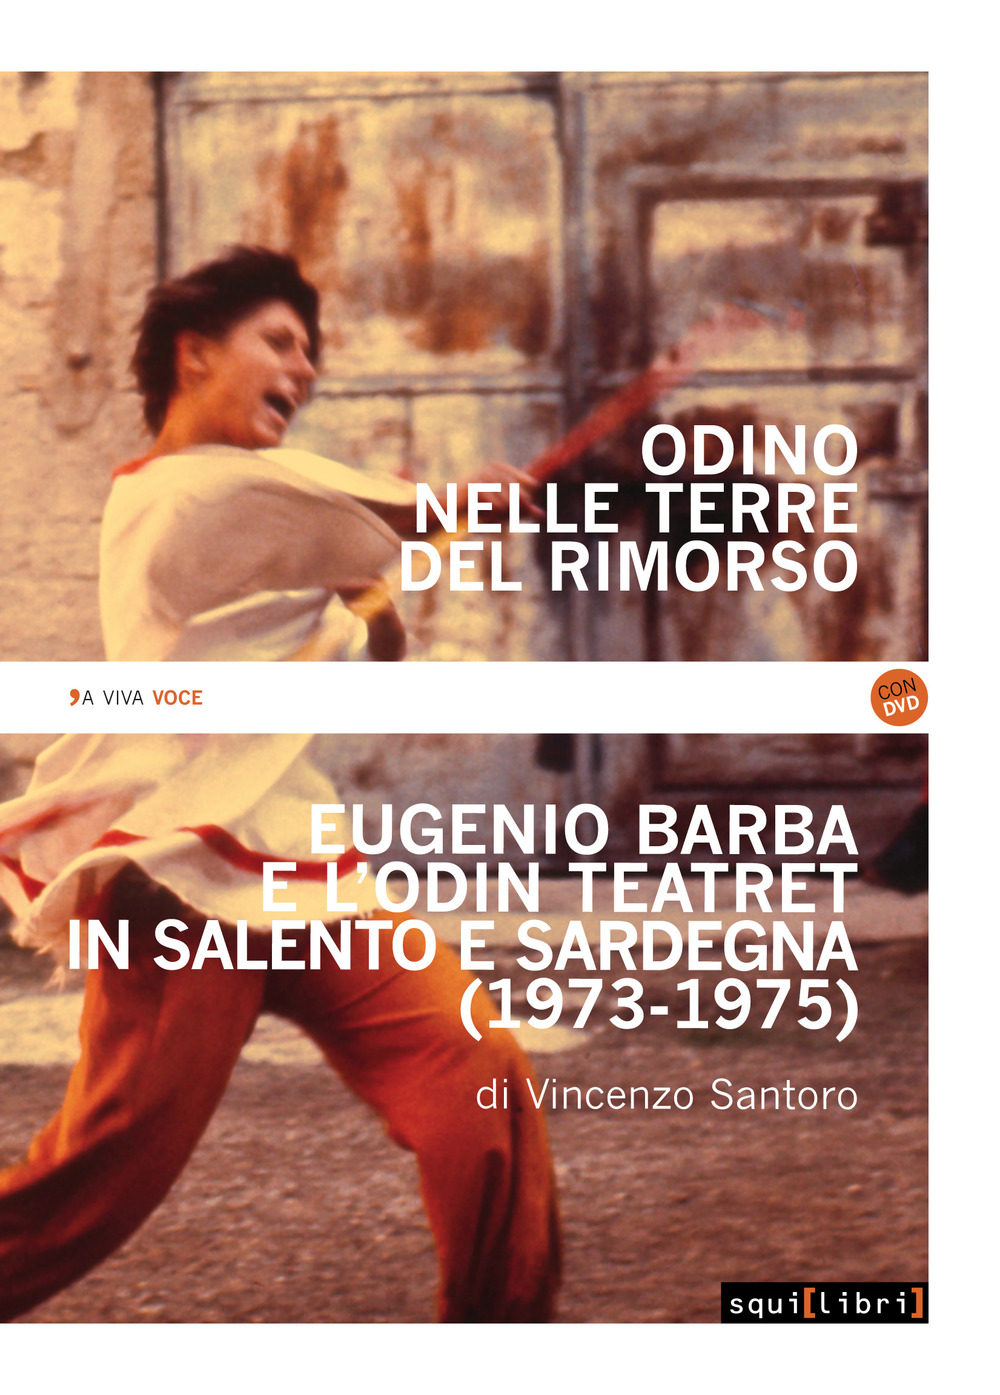 Odino nelle terre del rimorso. Eugenio Barba e l'Odin Teatret in Salento e Sardegna. Con DVD video